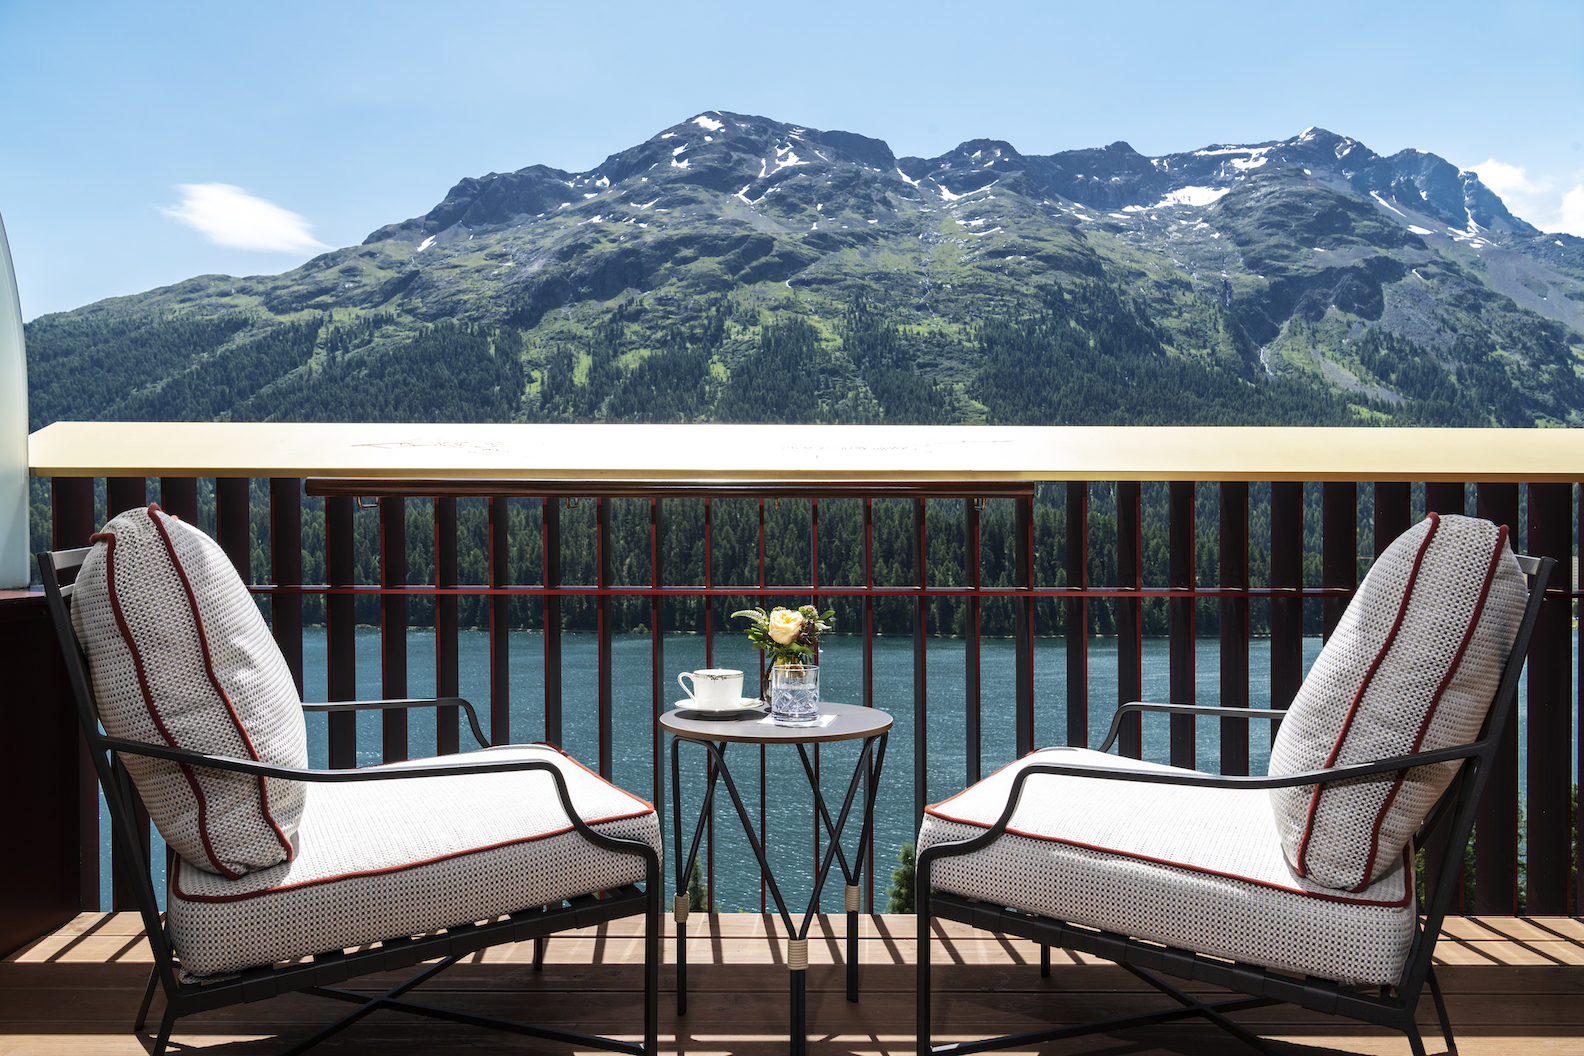 Badrutt’s Palace Hotel erneut bestes Hotel der Schweiz bei Travel + Leisure Awards